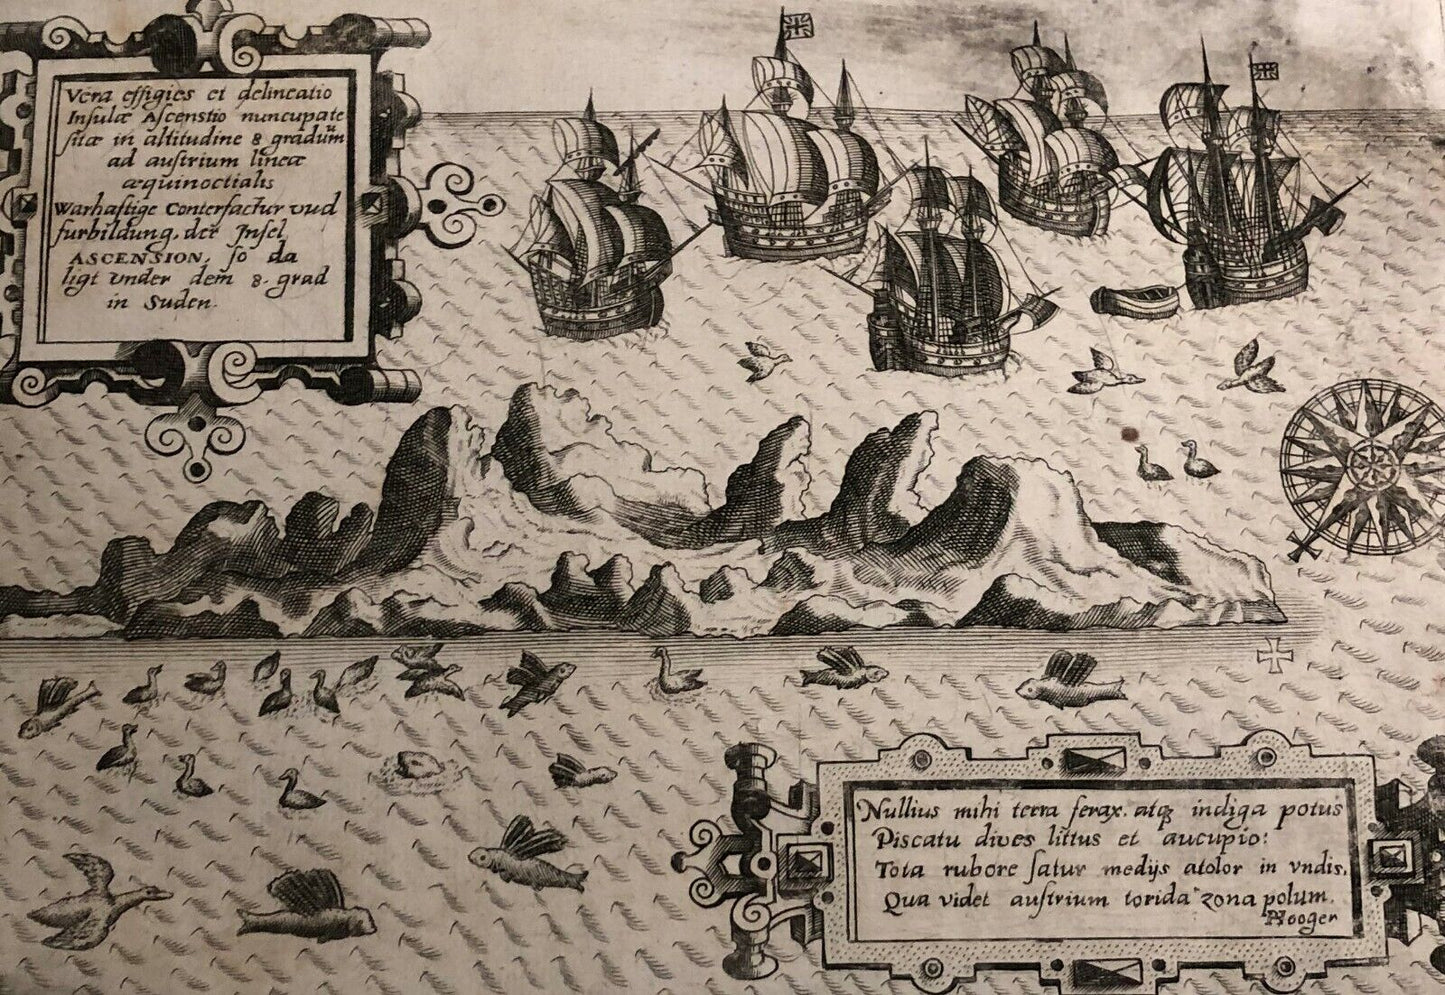 De Bry / Linschoten - Vera effiges Ascension- 1610 - Original Map